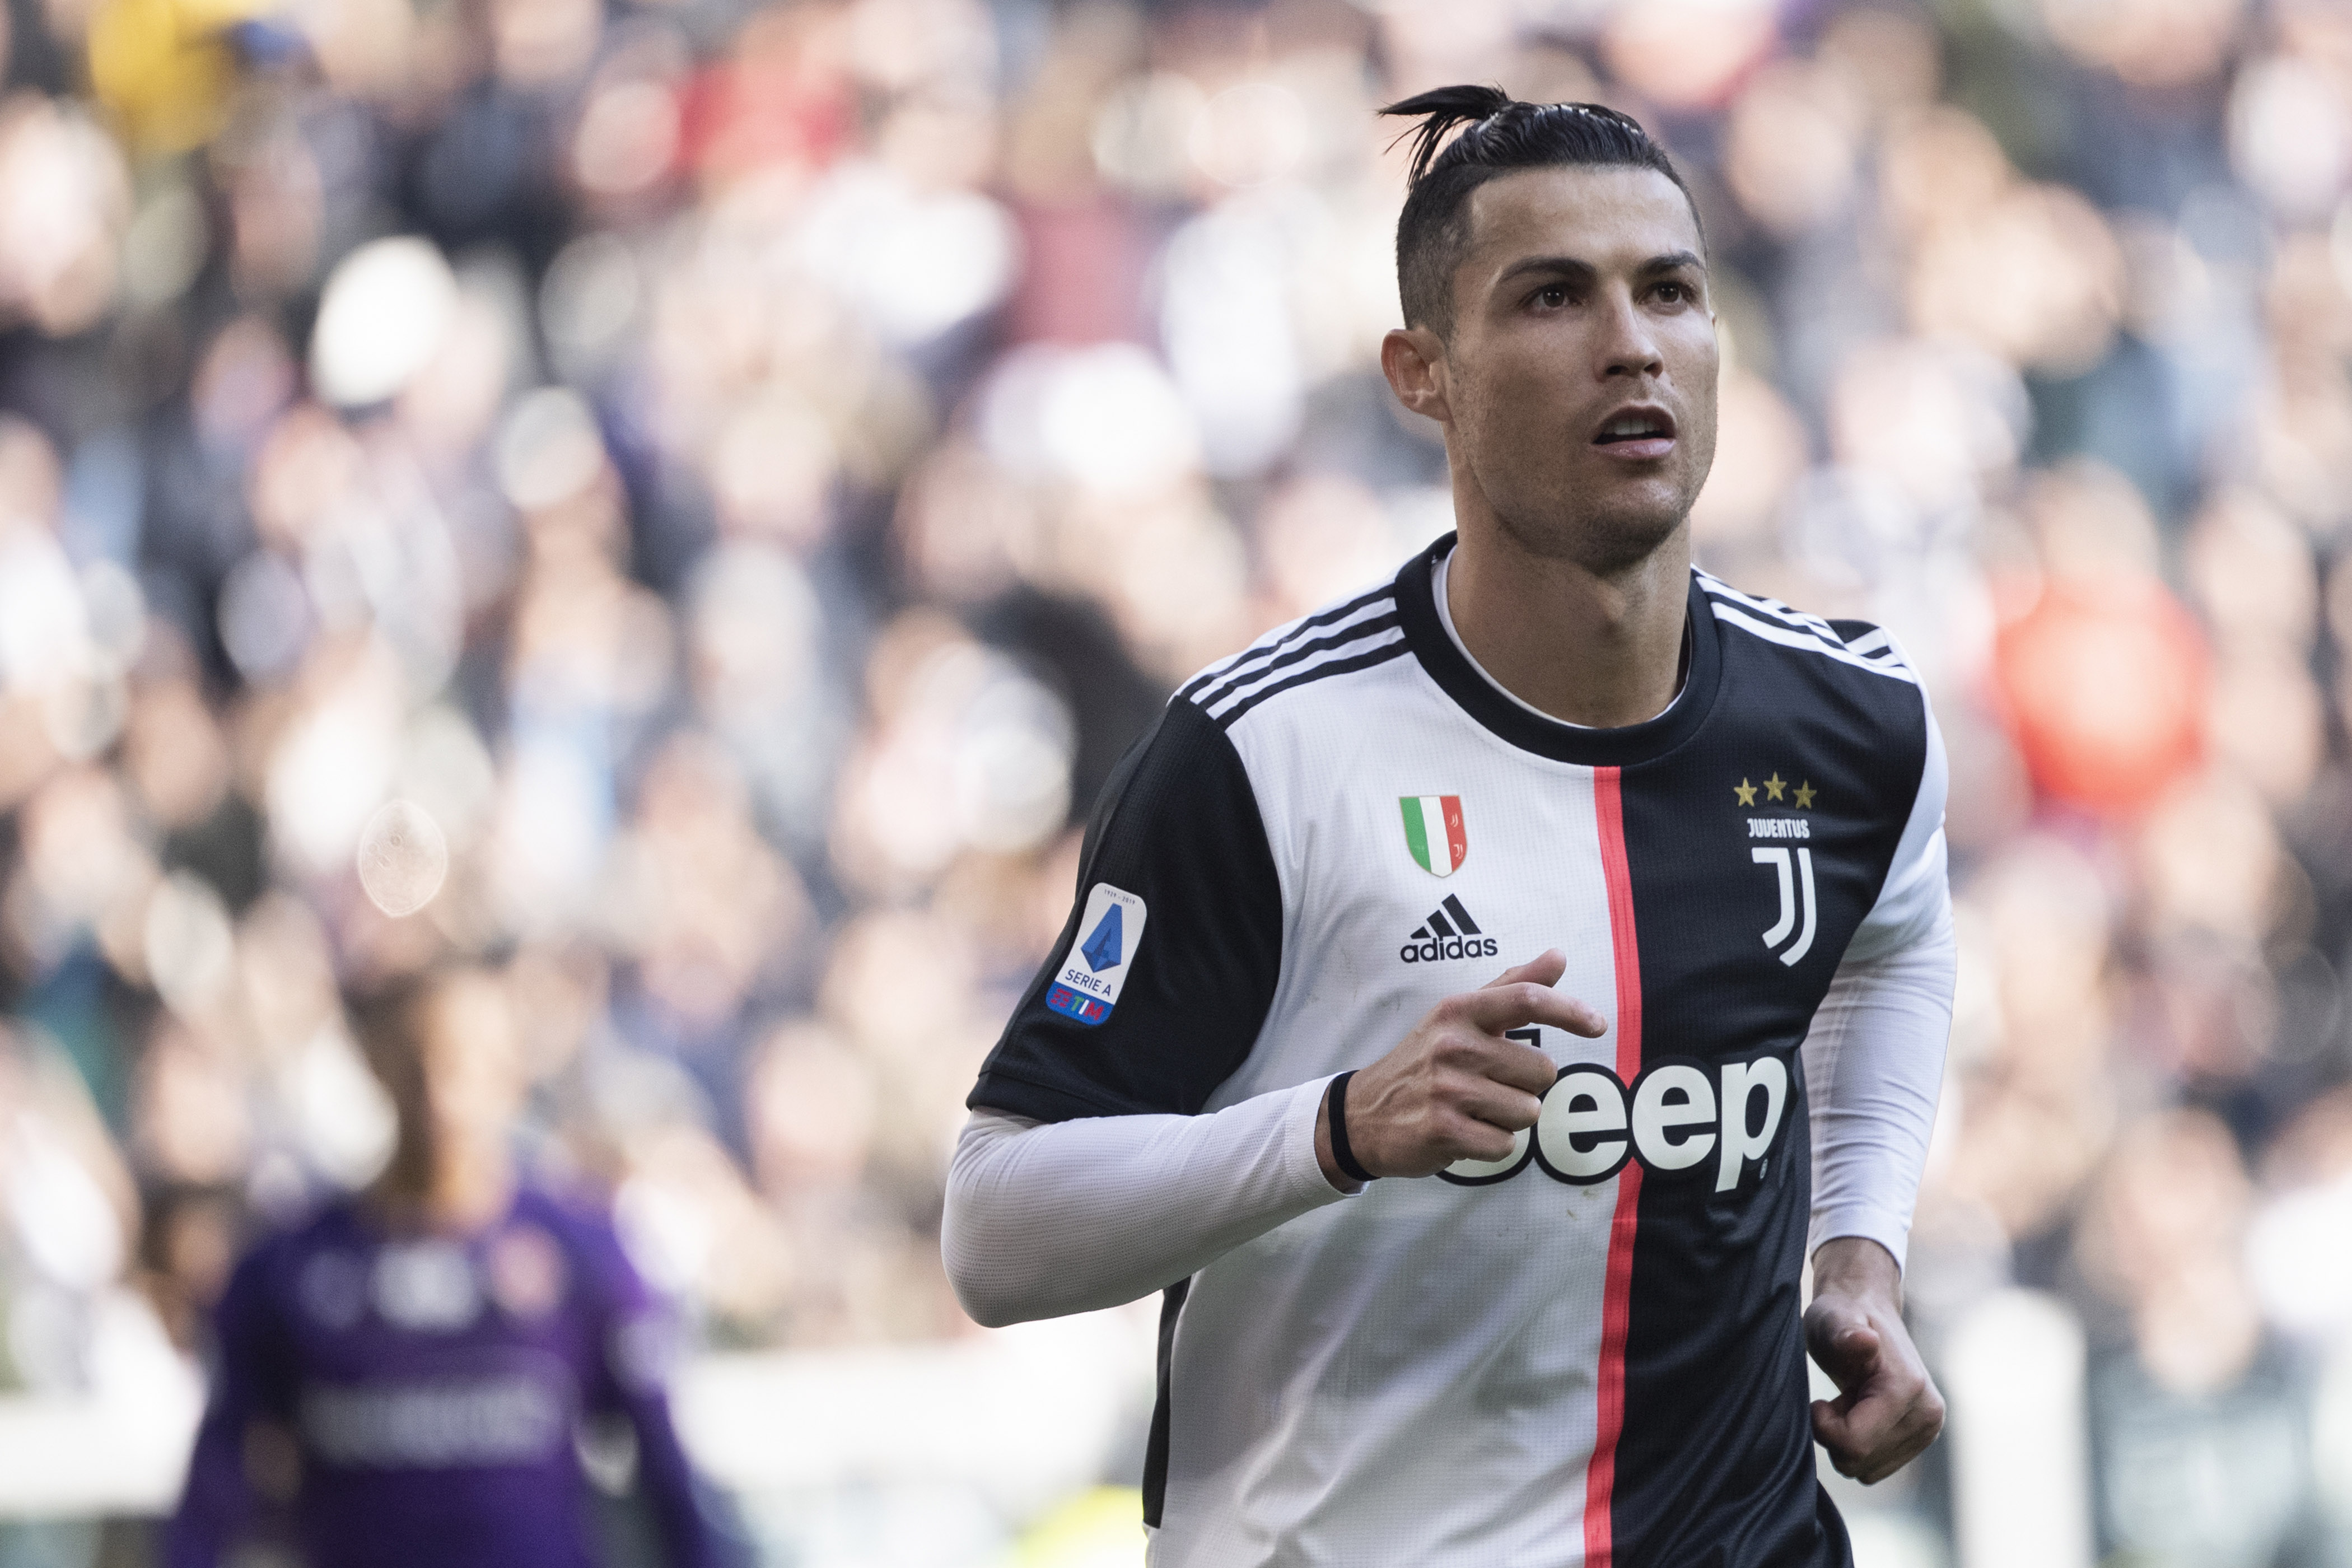 ESQUENTOU - A Juventus colocou um preço para vender o astro Cristiano Ronaldo. De acordo com o “Corriere dello Sport”, a Velha Senhora está disposta a vender o astro por 60 milhões euros (R$ 343 milhões), 40 milhões a menos do que pagou pelo jogador em 2018.